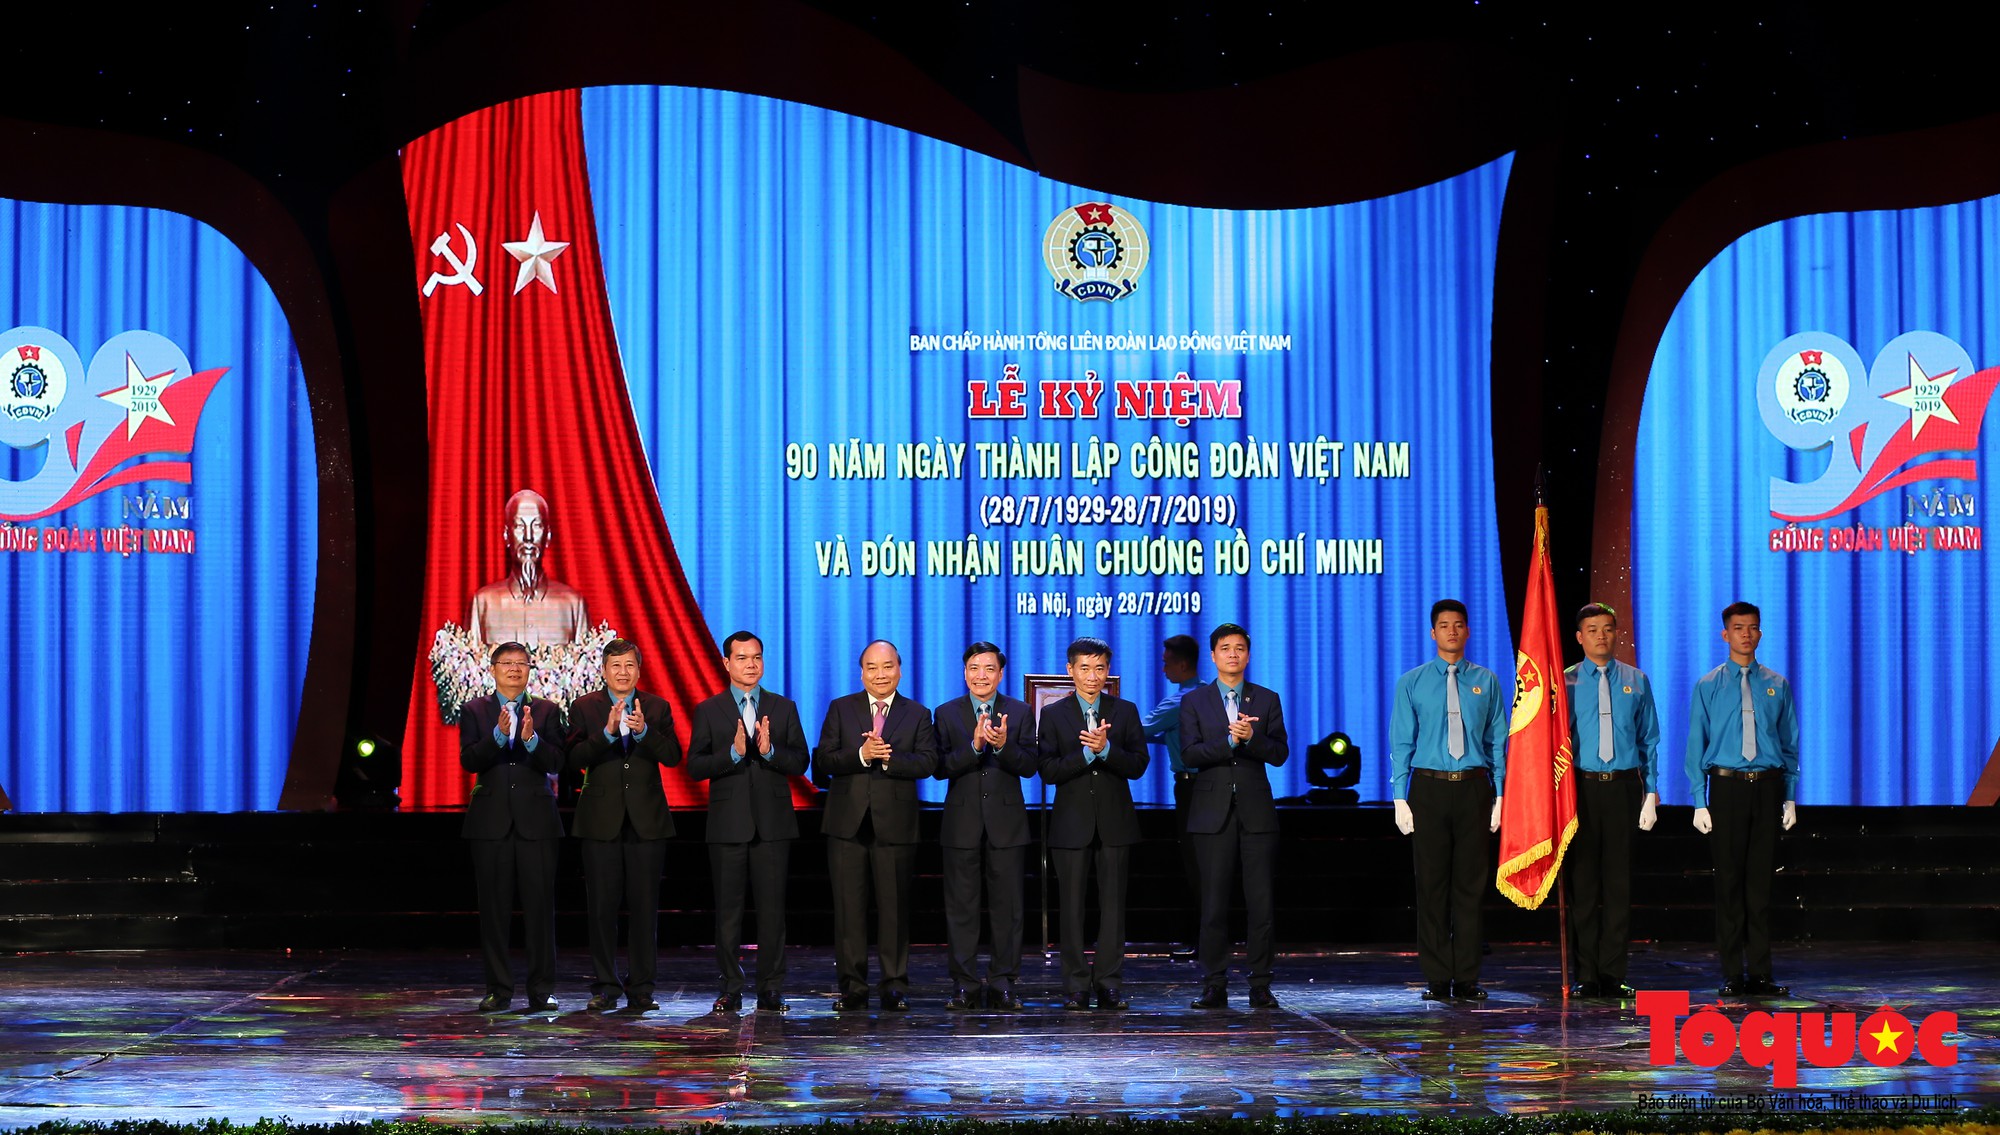 Long trọng Lễ kỷ niệm 90 năm Ngày thành lập Công đoàn Việt Nam (11)